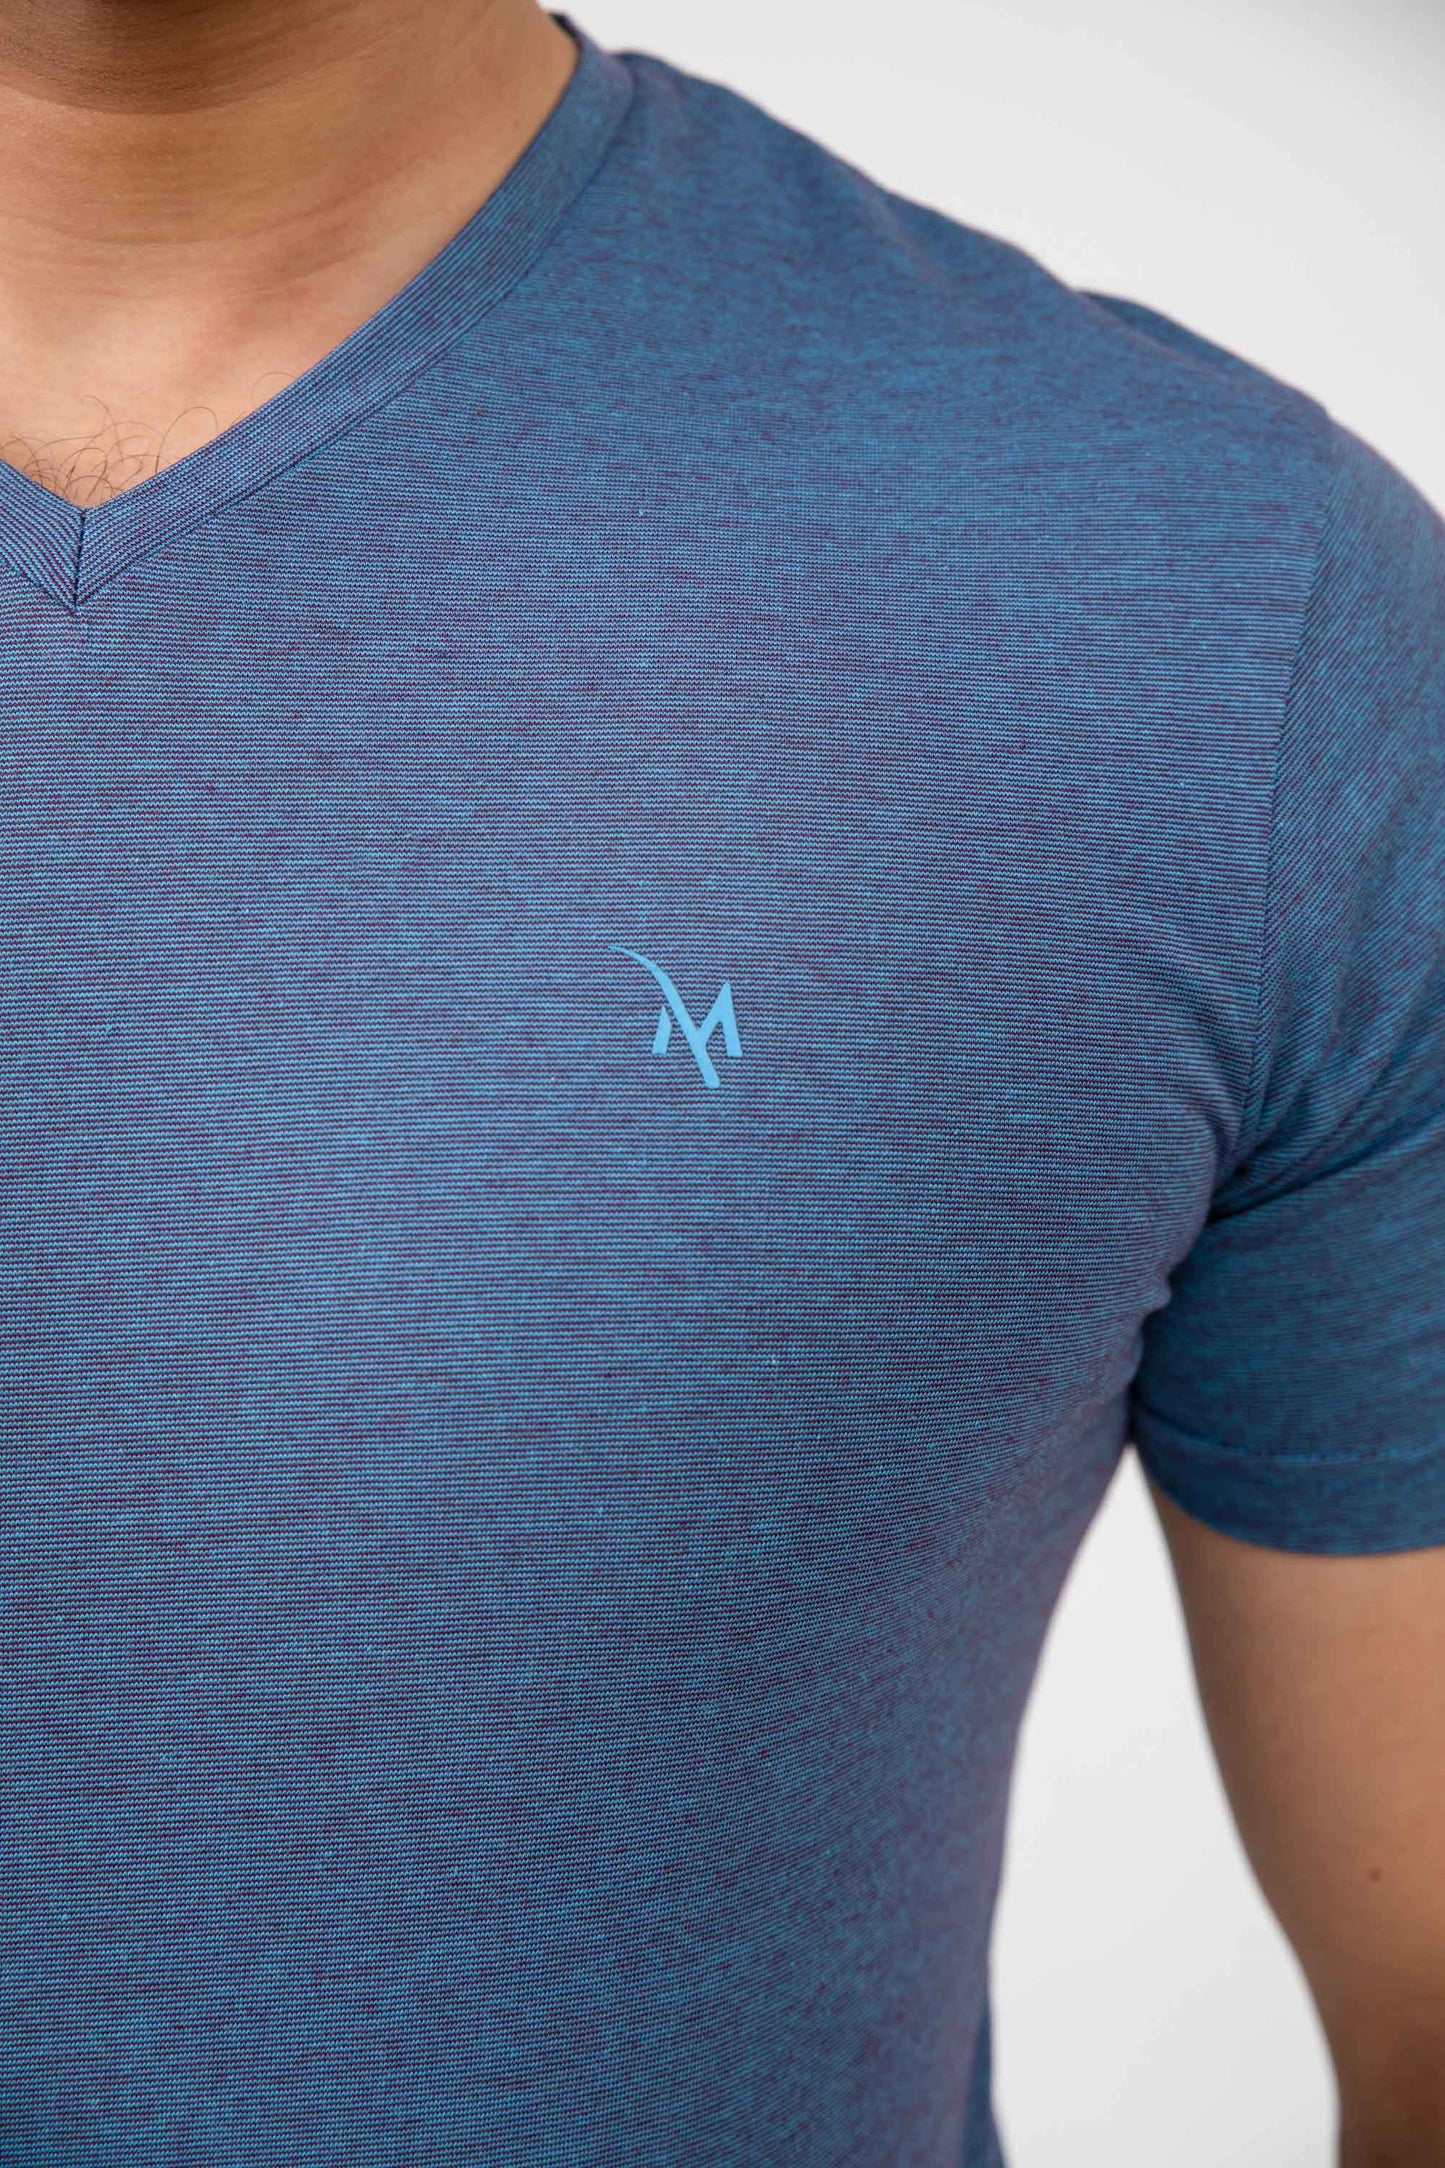 Madamadam Men's M Logo Embellished V Neck Tee Shirt Men's Tee Shirt MADAMADAM 